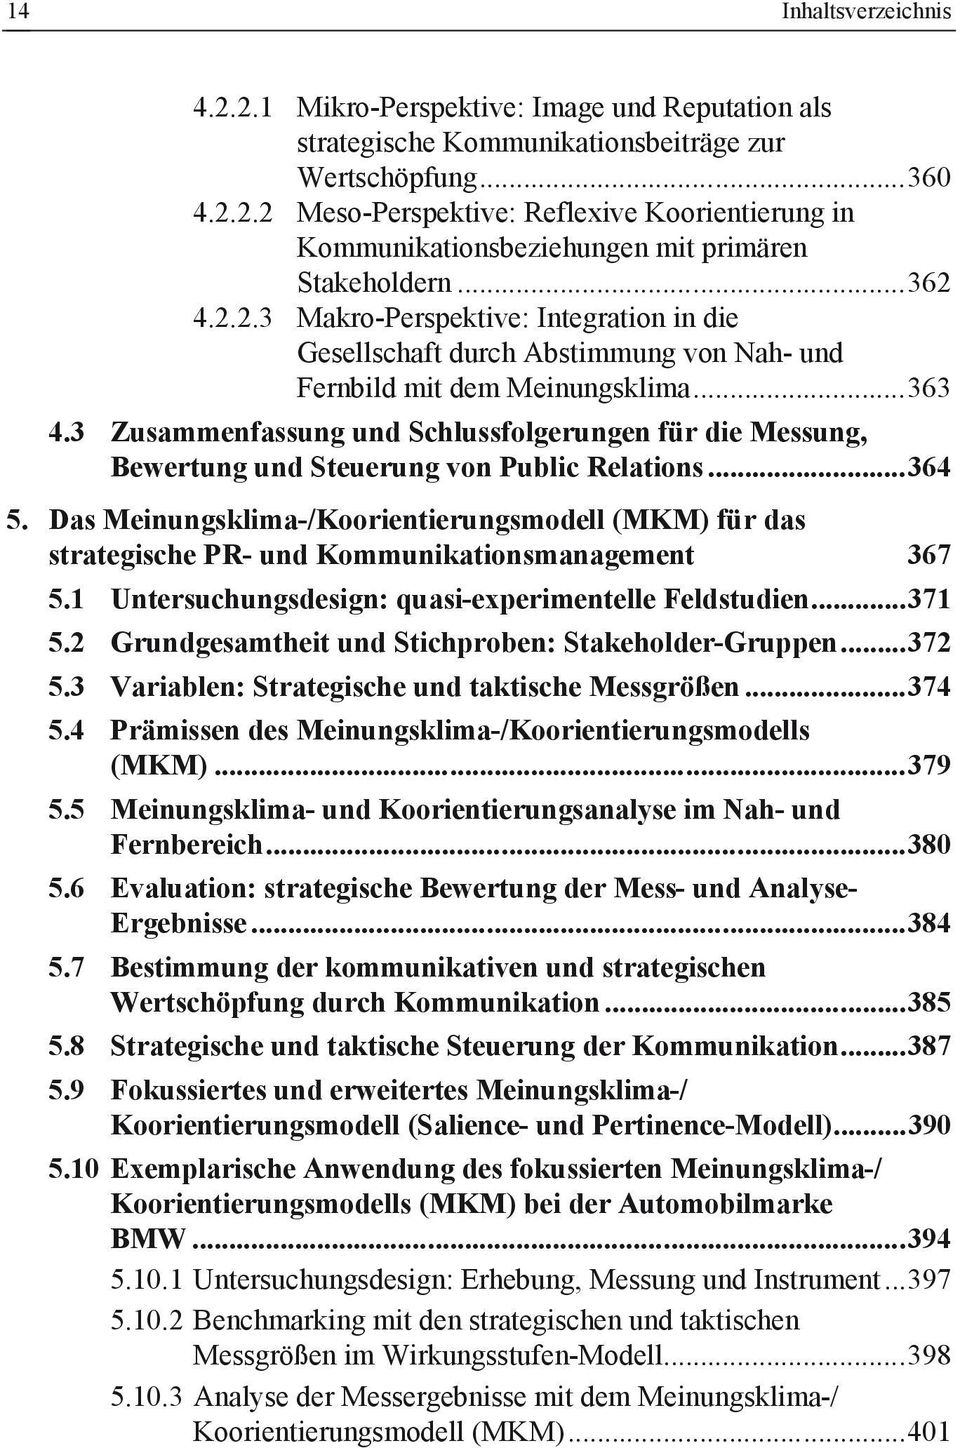 3 Zusammenfassung und Schlussfolgerungen für die Messung, Bewertung und Steuerung von Public Relations...364 5.